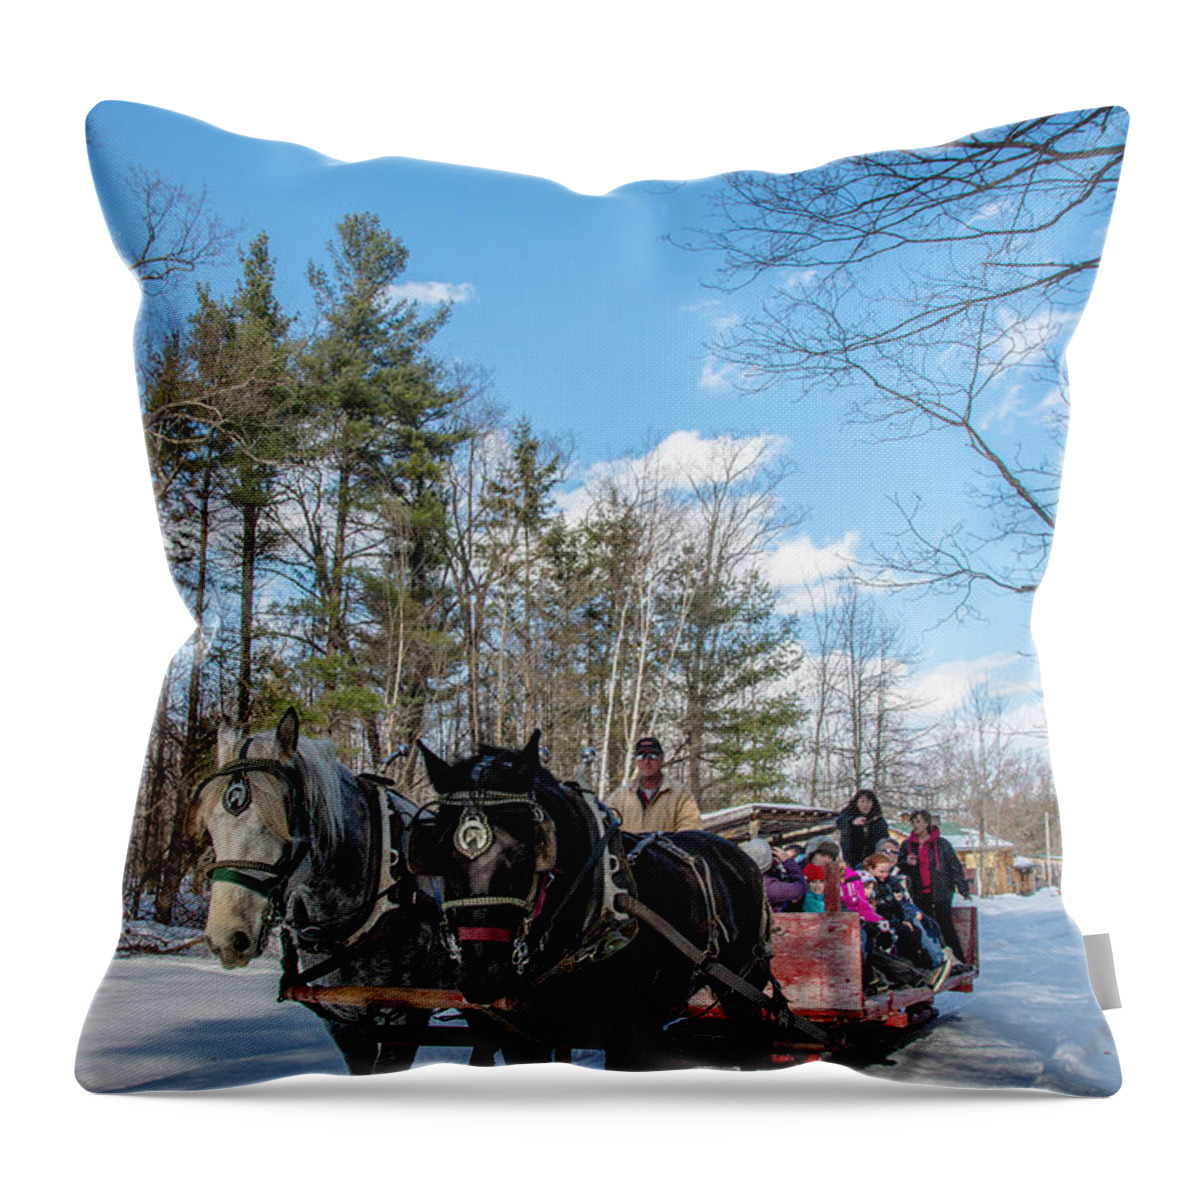 Maple Sugar Throw Pillow featuring the photograph Sugar Bush Horse Ride by Cheryl Baxter